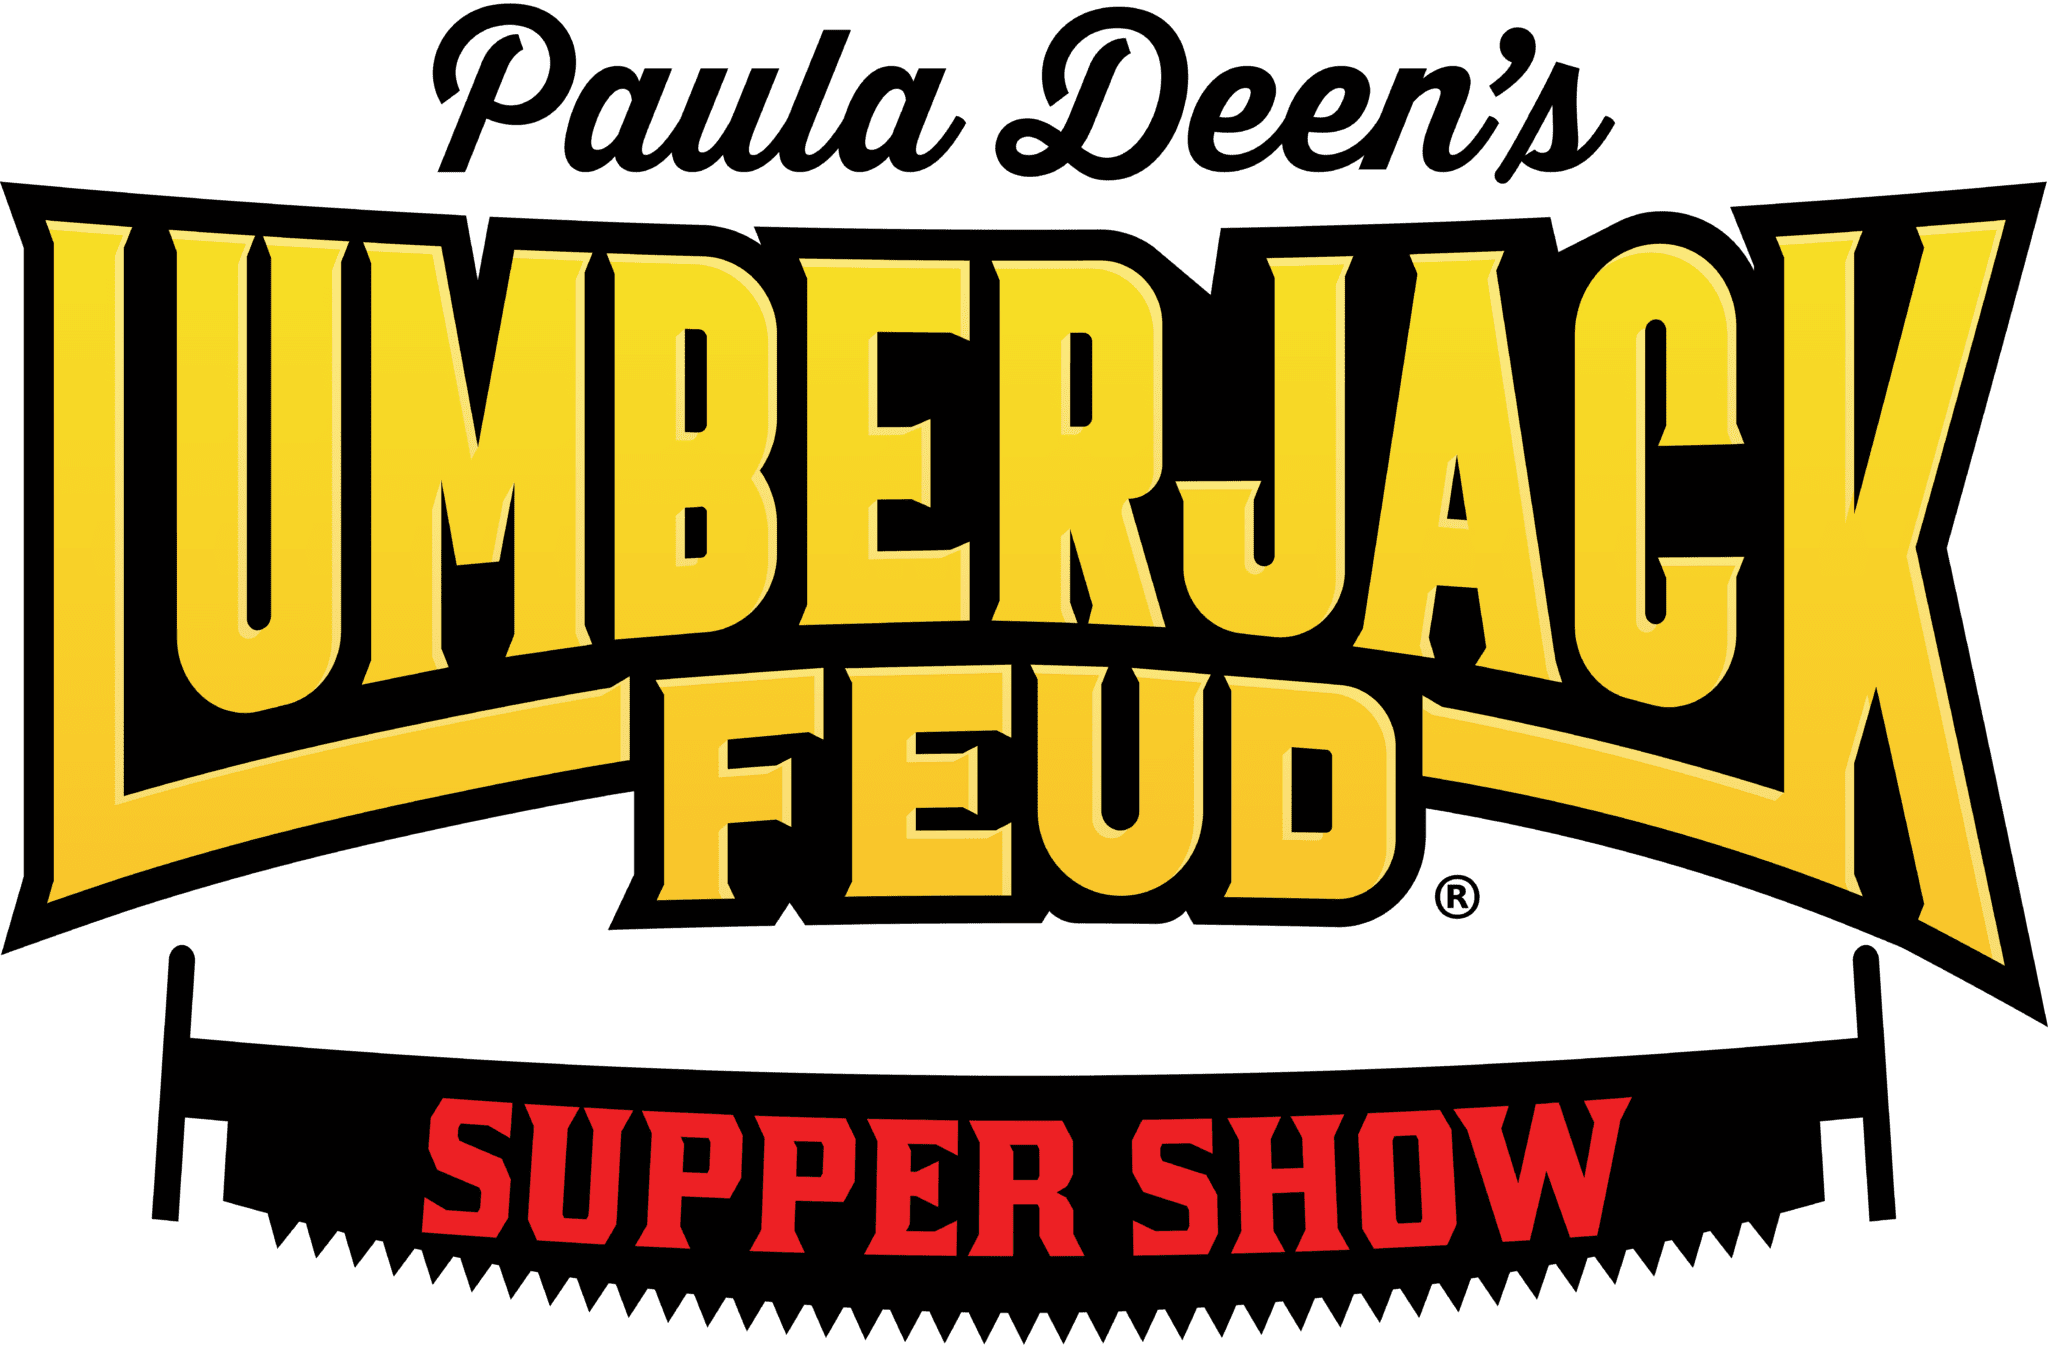 Paula Deen's Lumberjack Feud